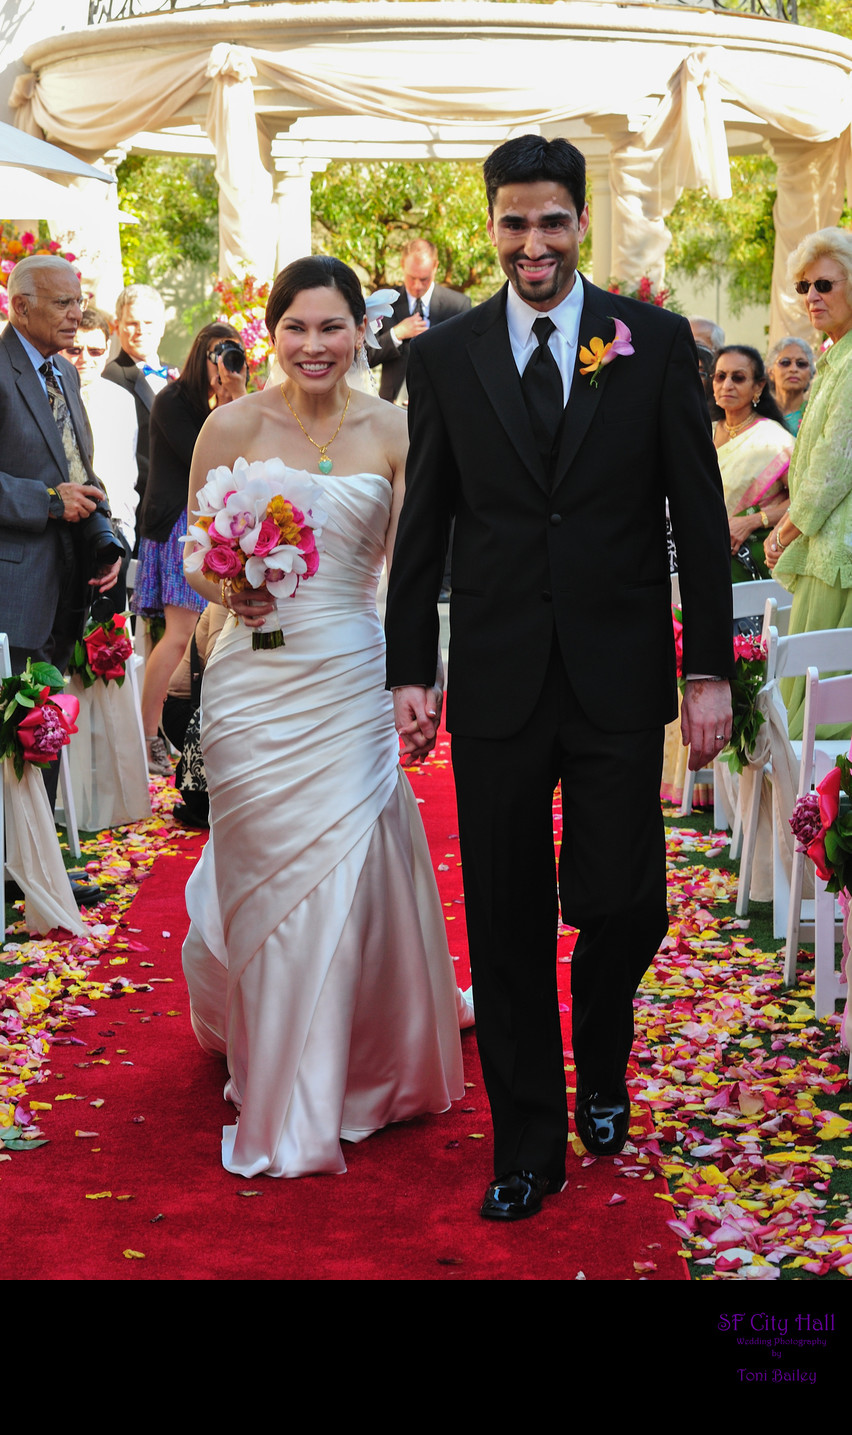 bride and groom walking down flower aisle